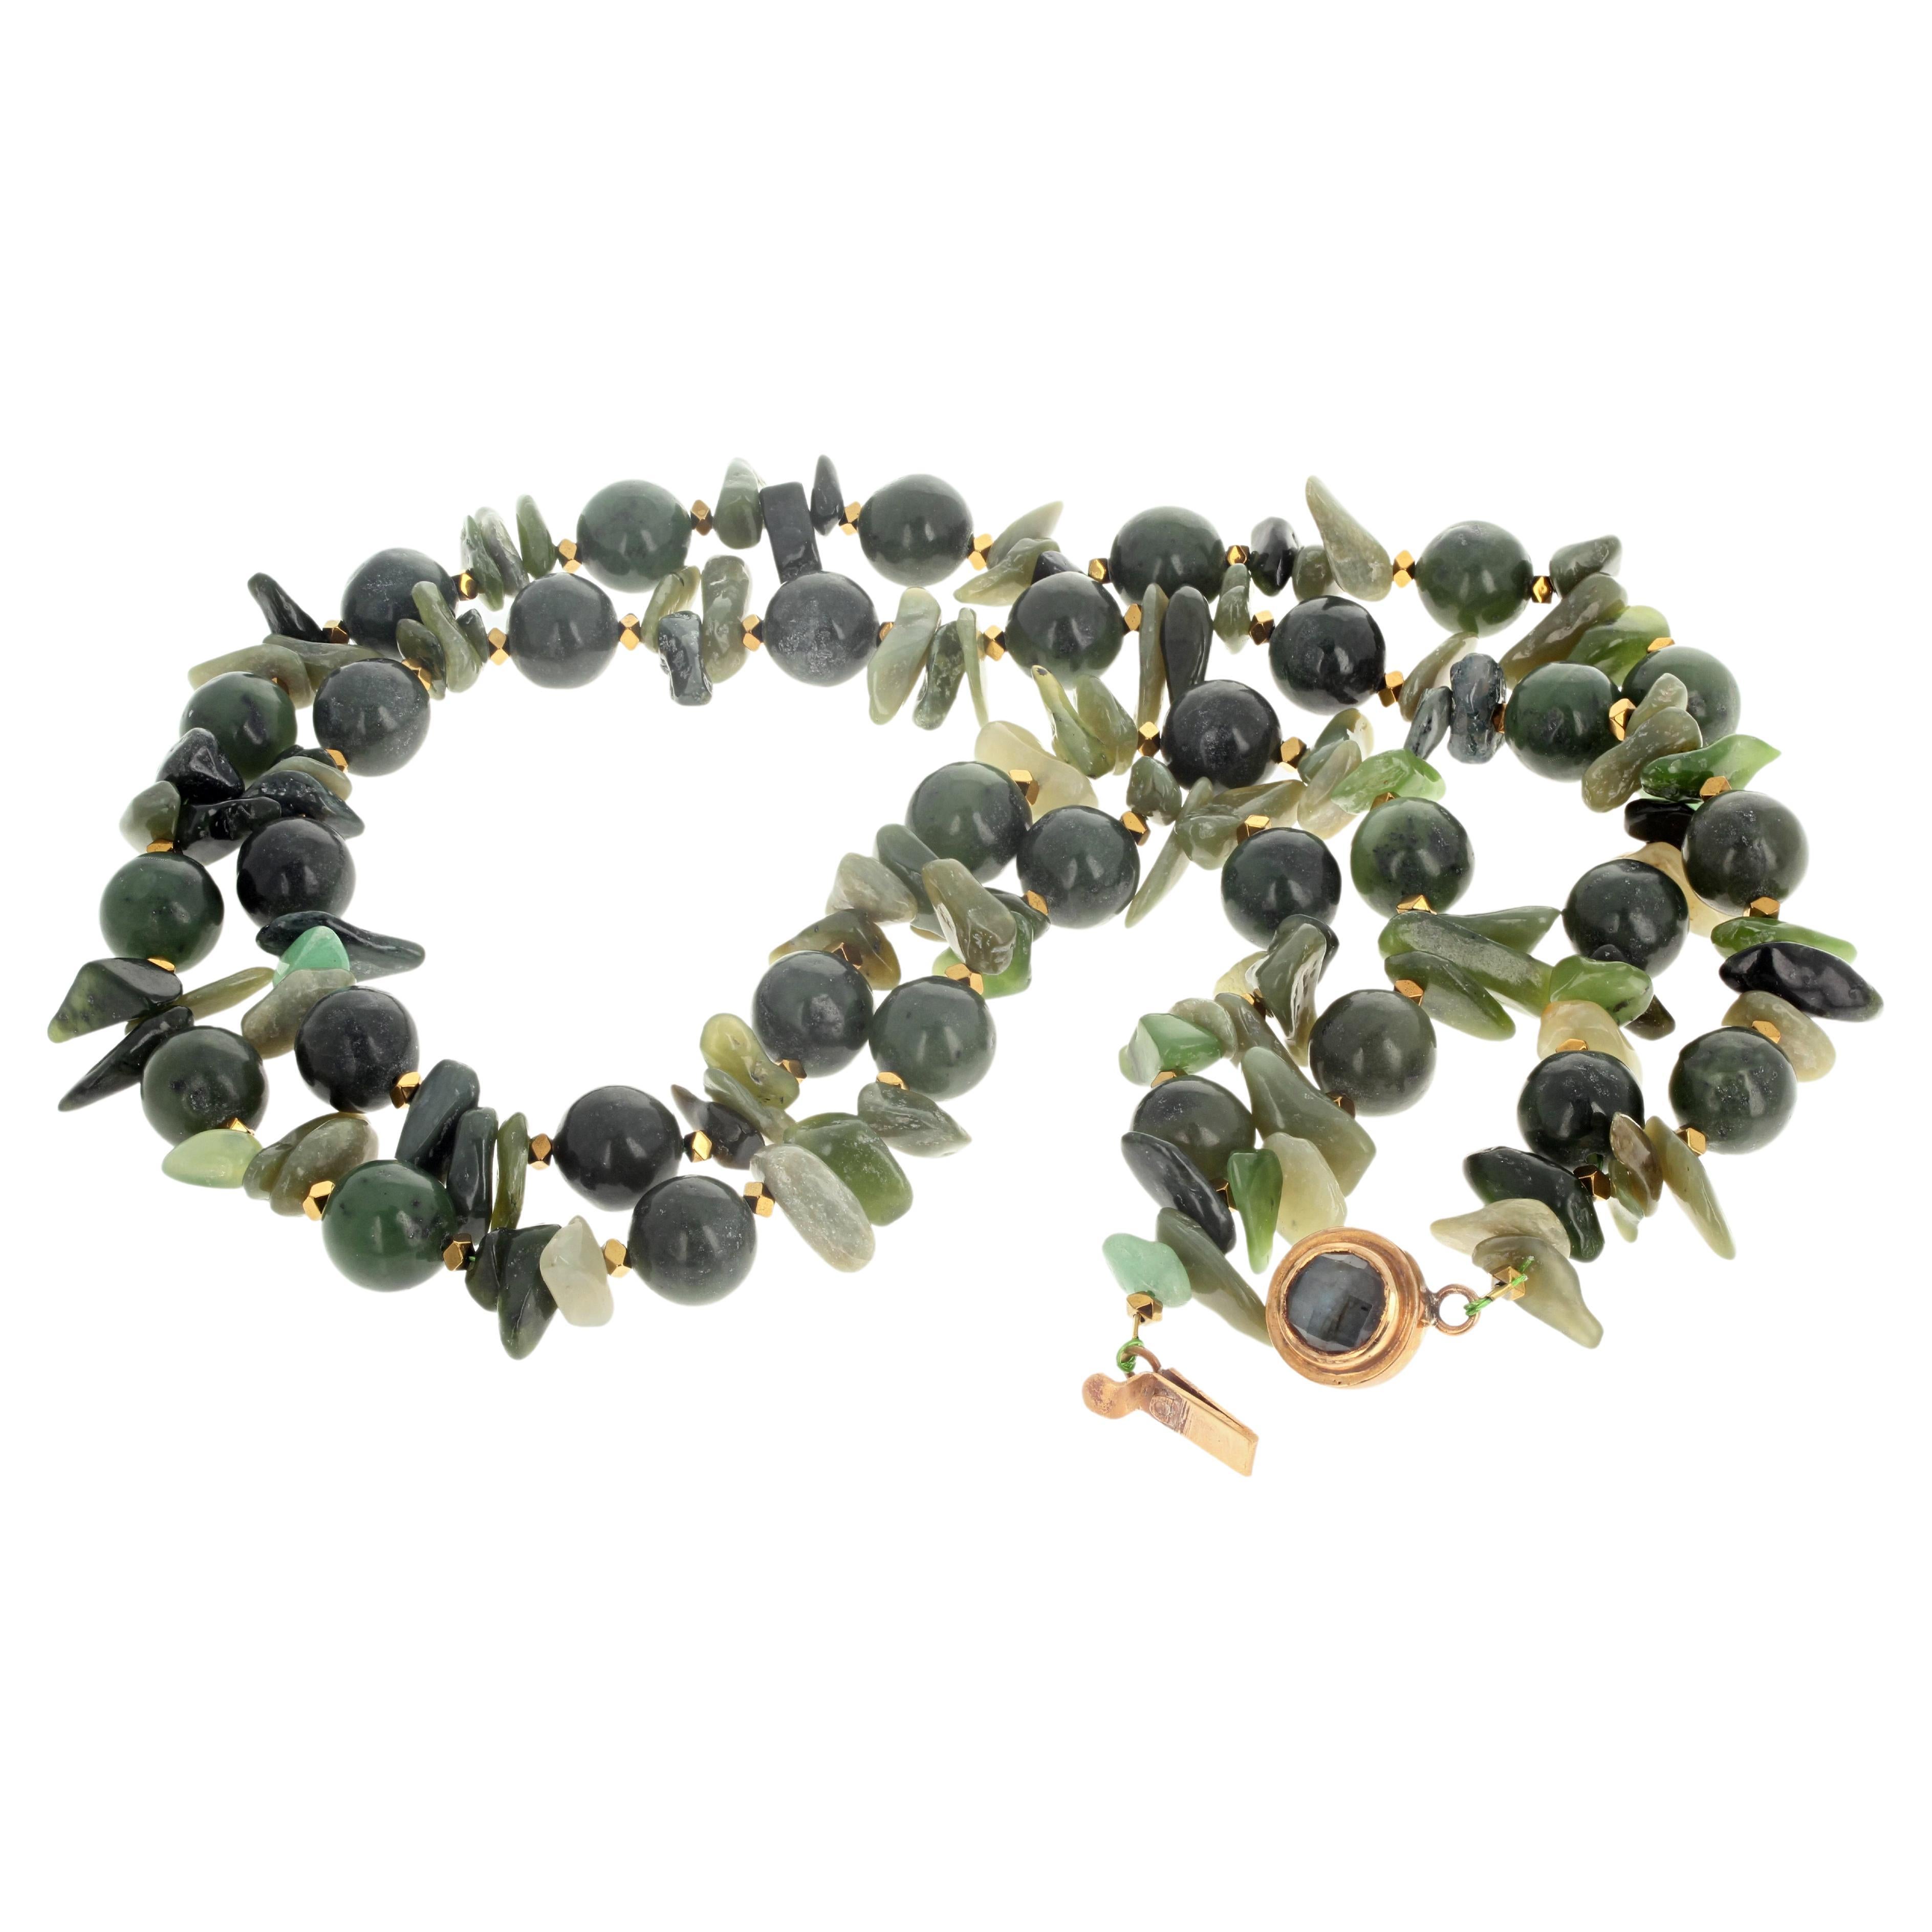 Ces Jades brillent magnifiquement à la lumière sur ce magnifique collier à double brin de 19 pouces de long.  Le Jade rond hautement poli mesure environ 12 mm.  Les éclats de Jade naturel sont tous de tailles différentes, le plus grand mesurant